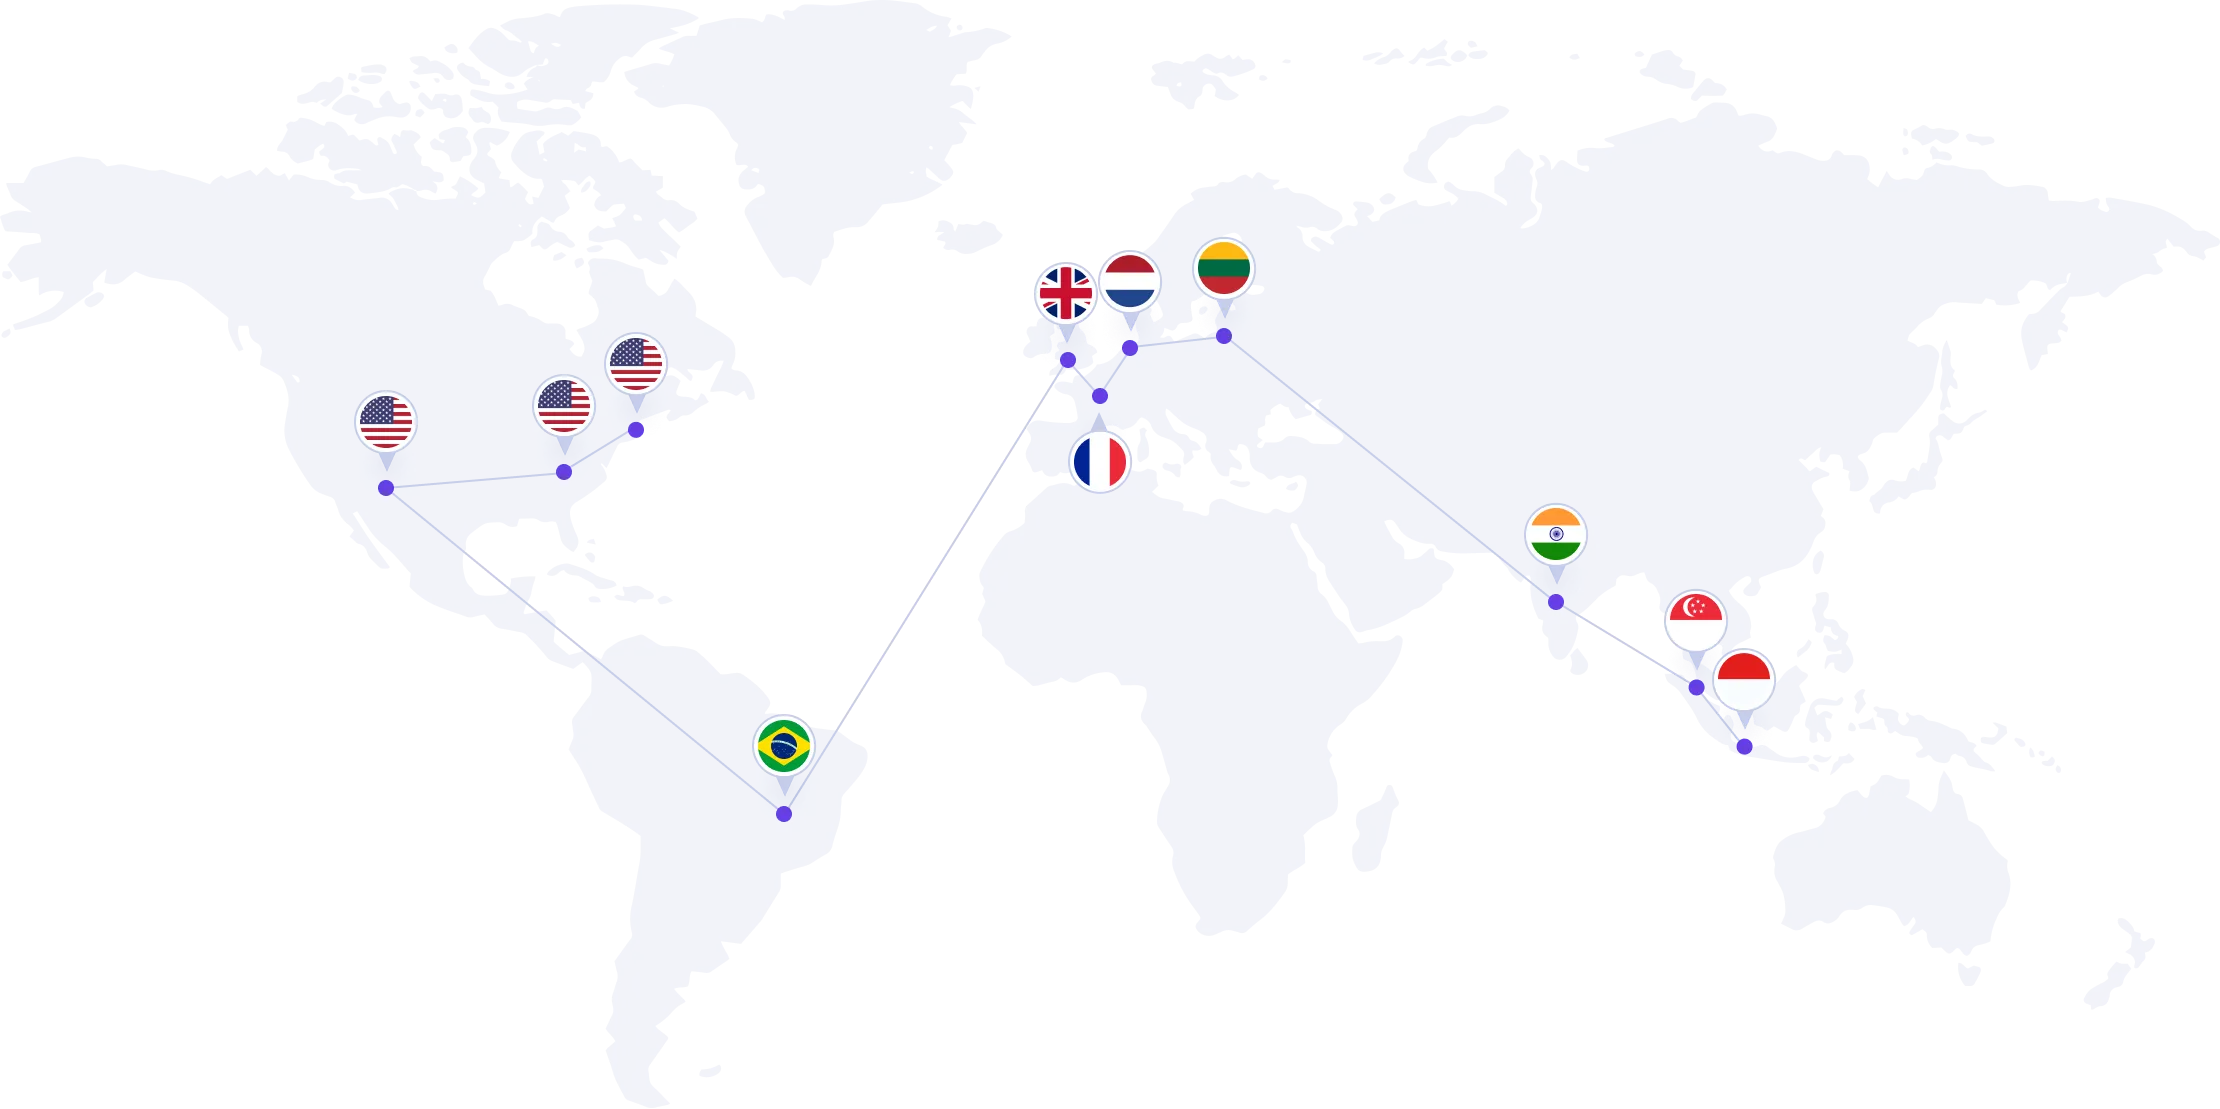 Κέντρα δεδομένων σε όλο τον κόσμο